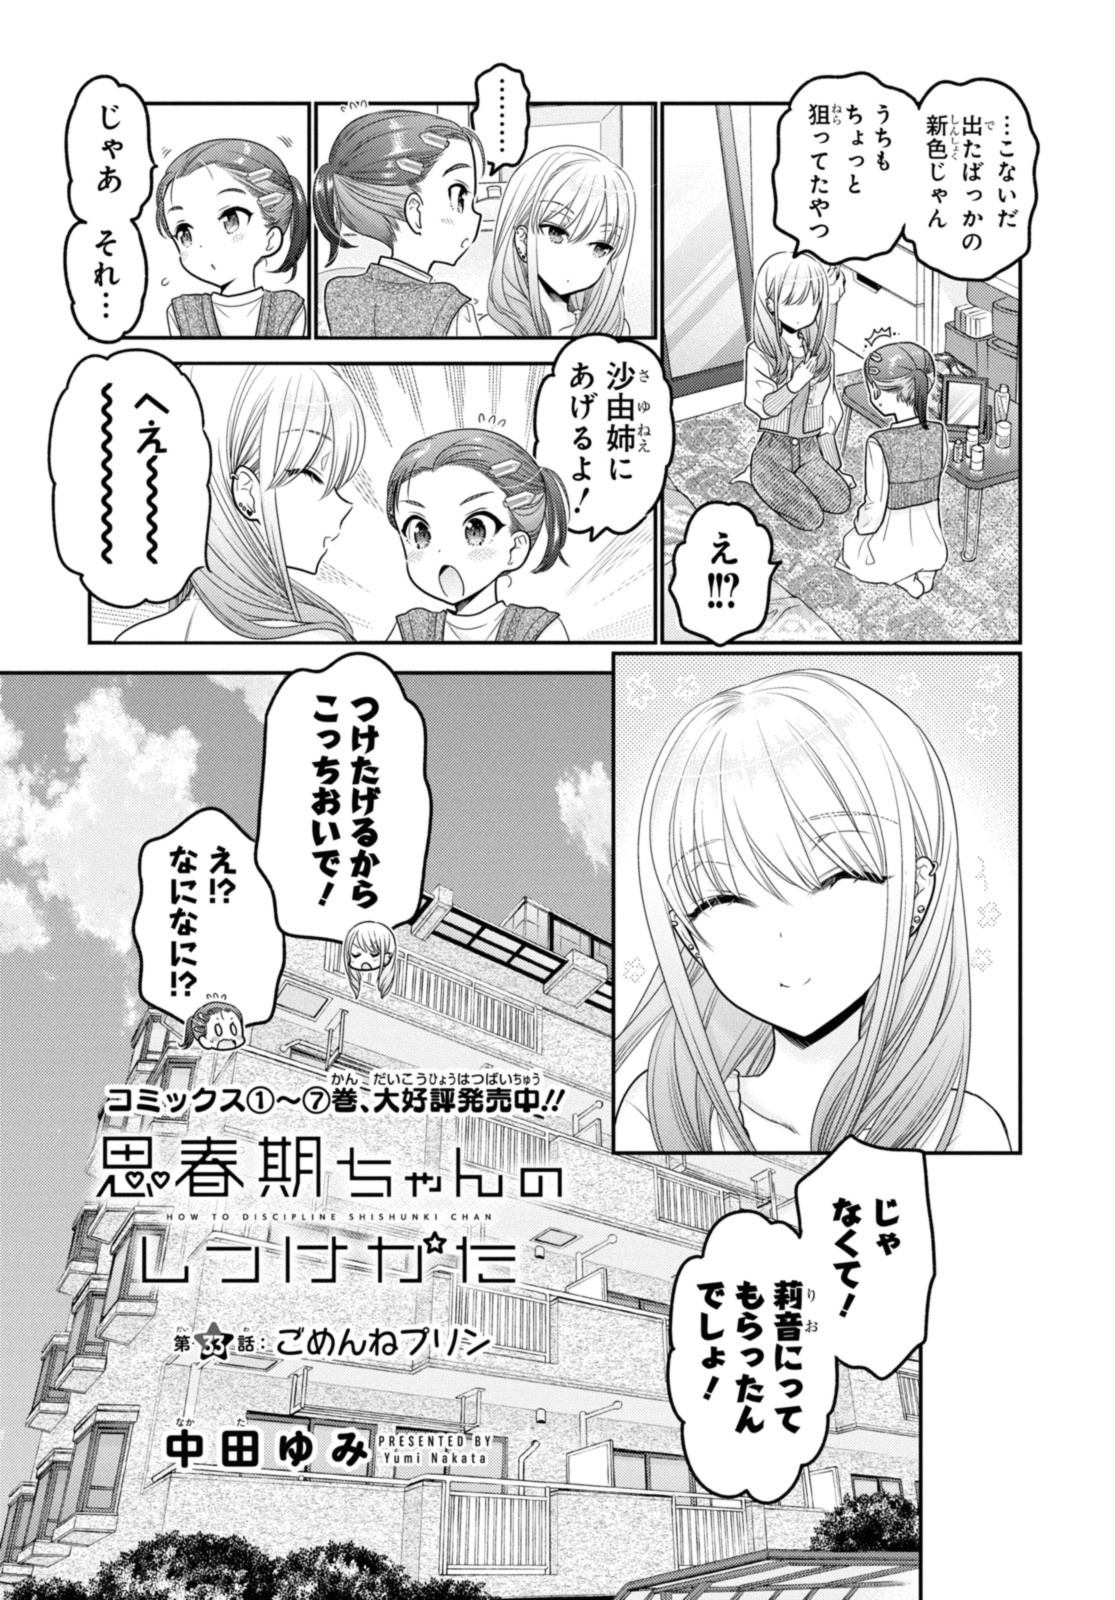 Shishunki-chan no Shitsukekata - Chapter 33.1 - Page 3